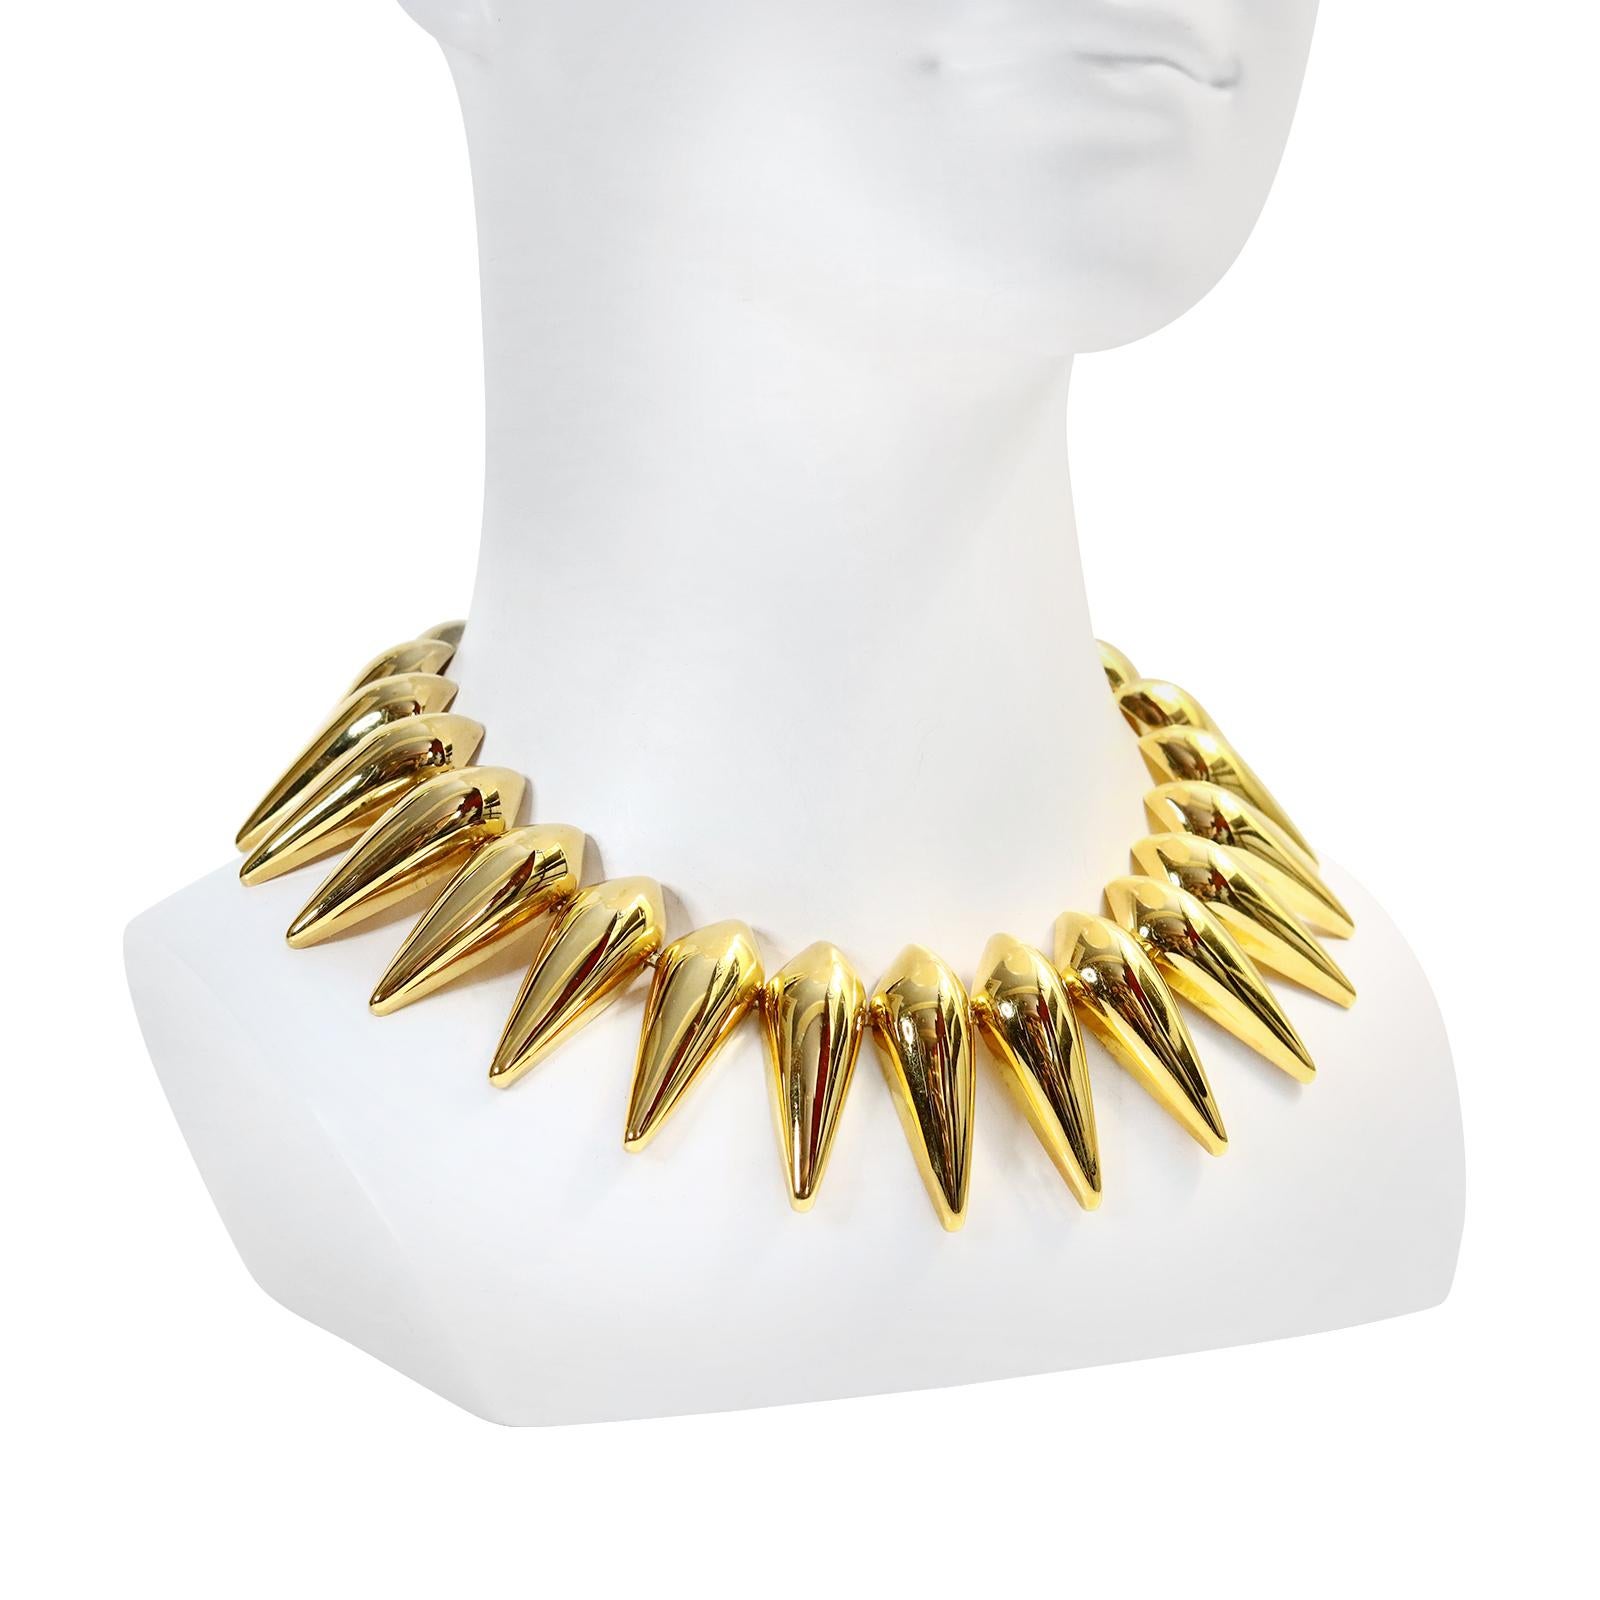 Vintage Monet Spiky Gold Tone Halskette CIRCA 1970s. Die Summe des Ganzen - so würde ich diese Halskette beschreiben.  Jedes Teil fügt sich zu einer Aussage zusammen.  Die Länge ist von 16-18